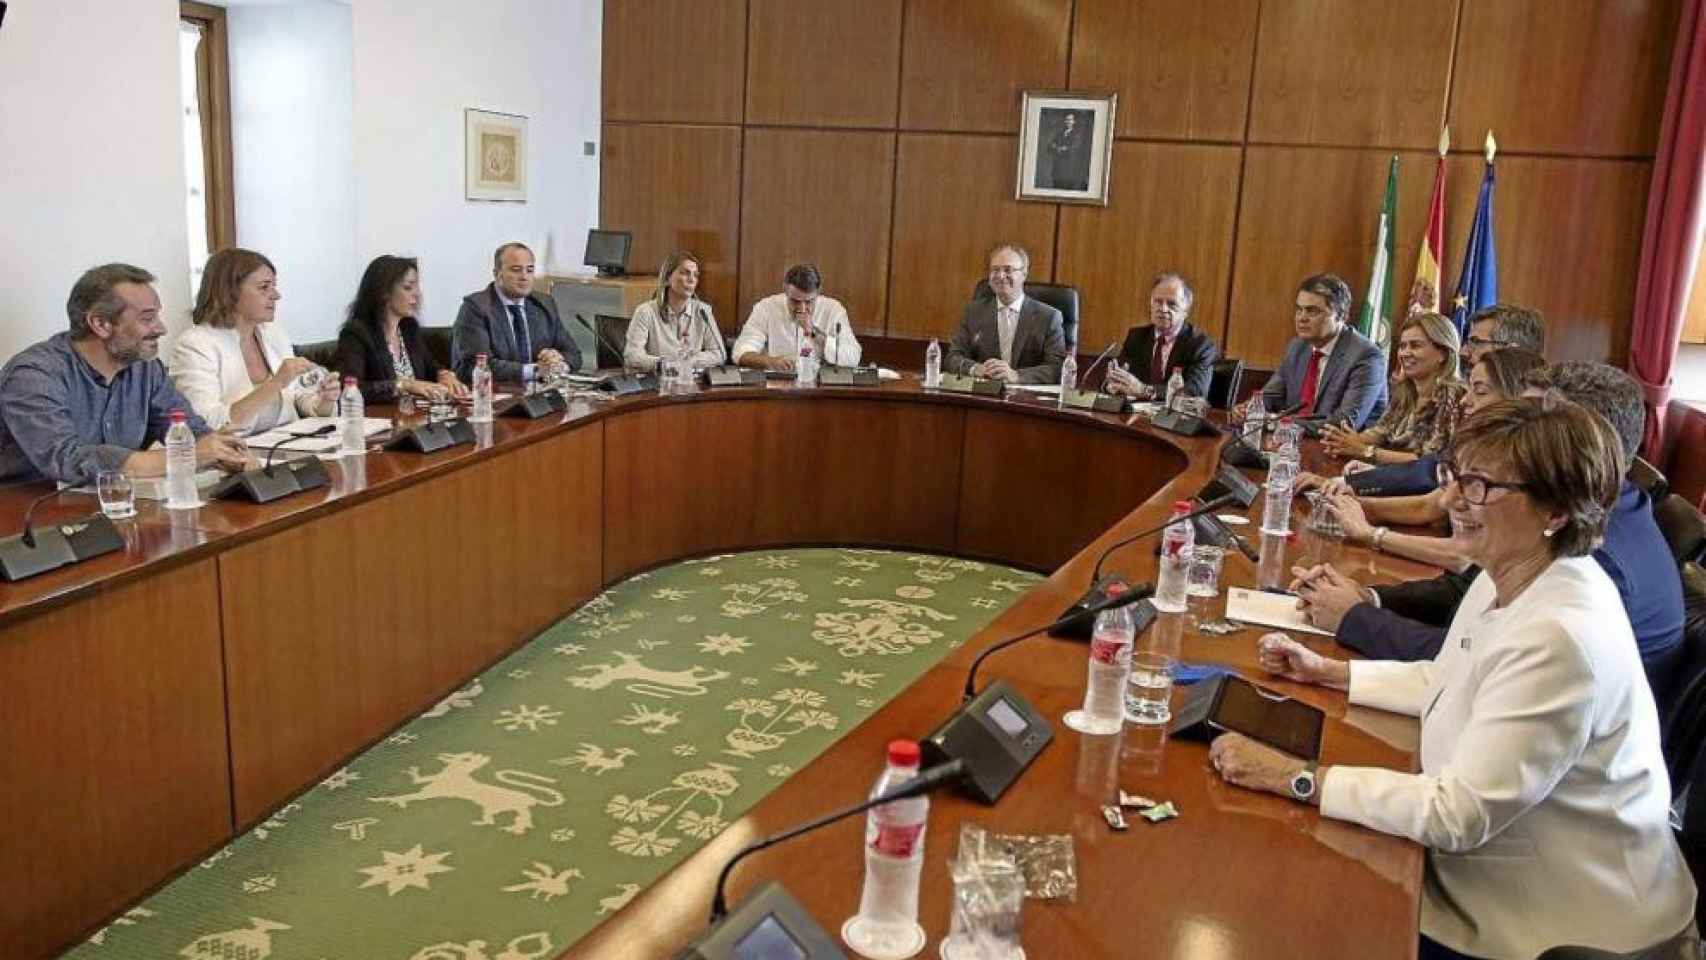 Reunión de la comisión parlamentaria de Andalucía que investiga el presunto fraude en los cursos de formación.